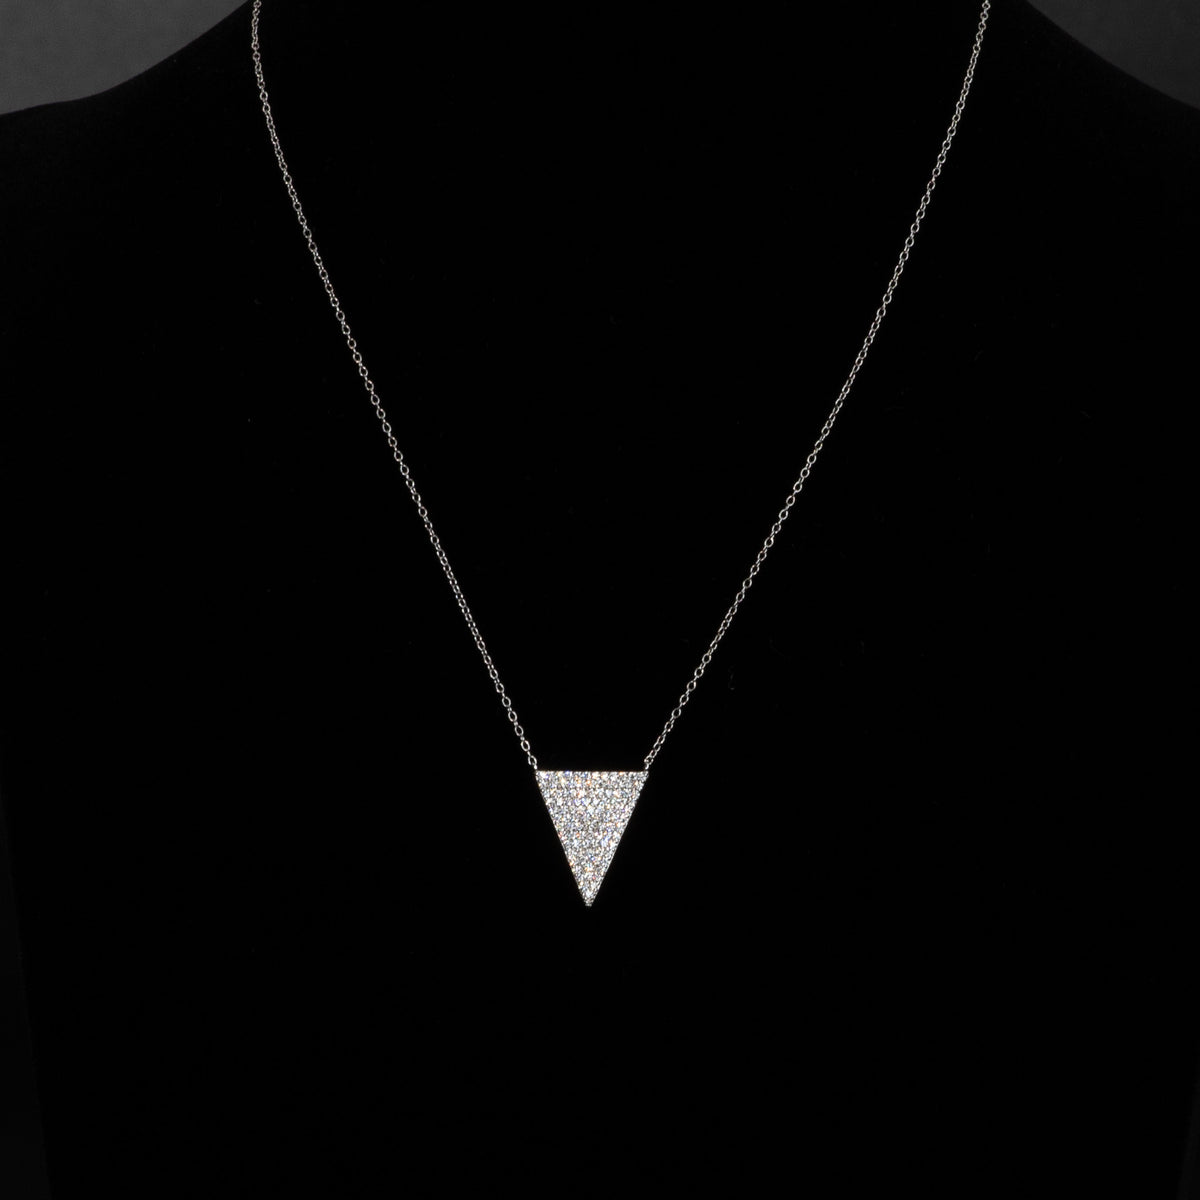 Lusso Triangolo Silver Necklace